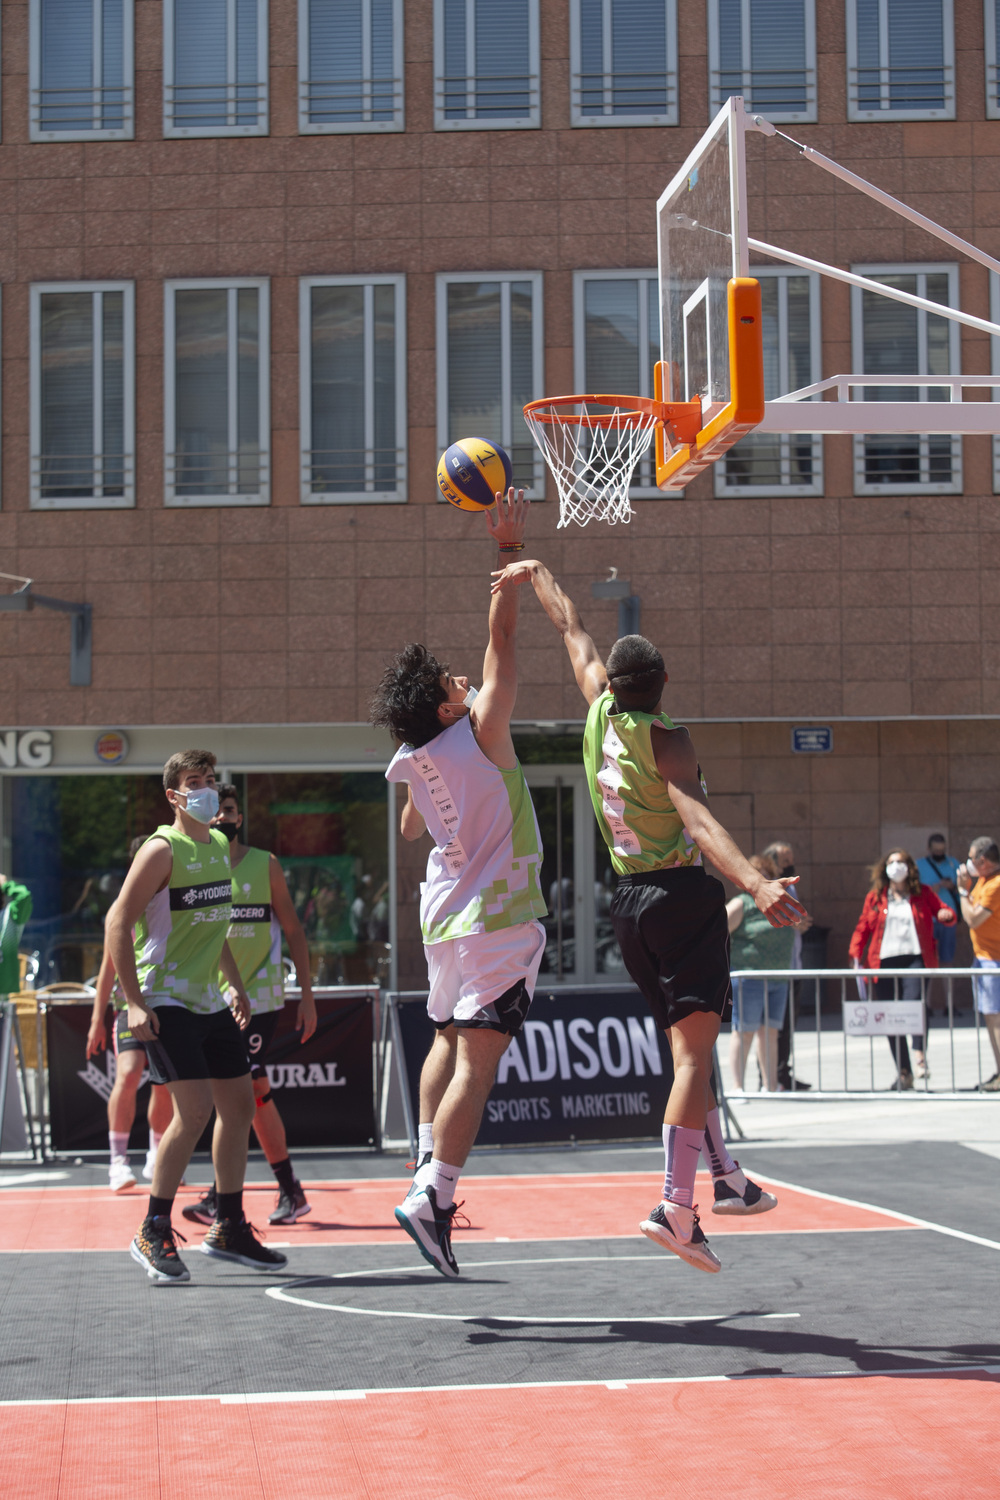 Baloncesto 3x3 Street Basket Tour de Castilla y León, plaza de Santa Teresa.  / ISABEL GARCÍA